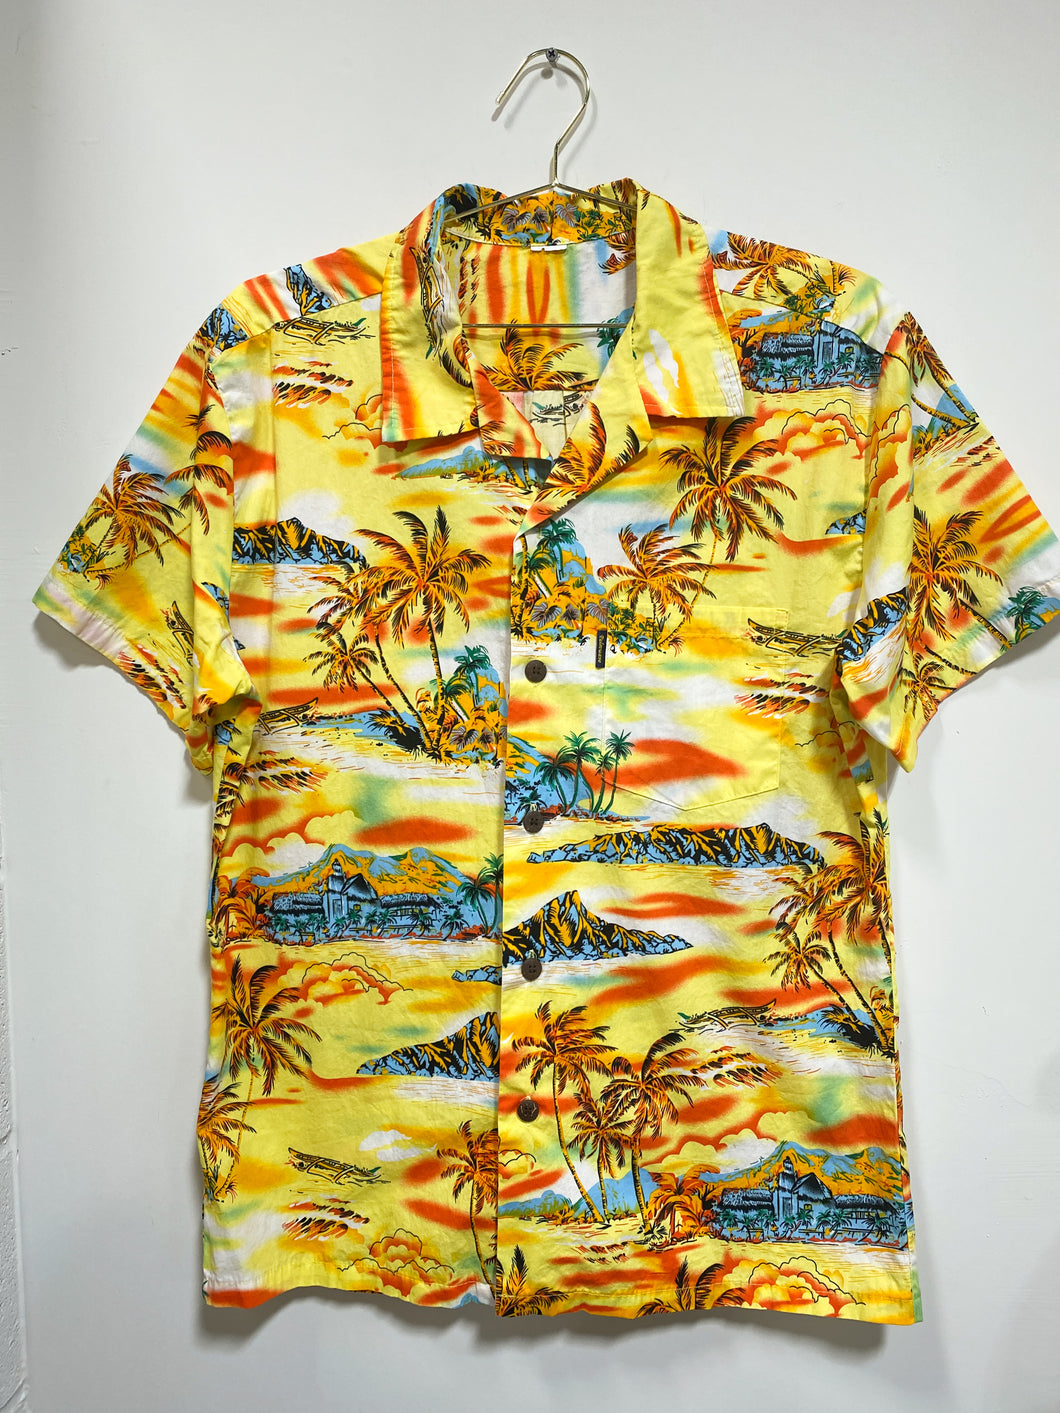 Vintage Yellow Hawaiian Shirt